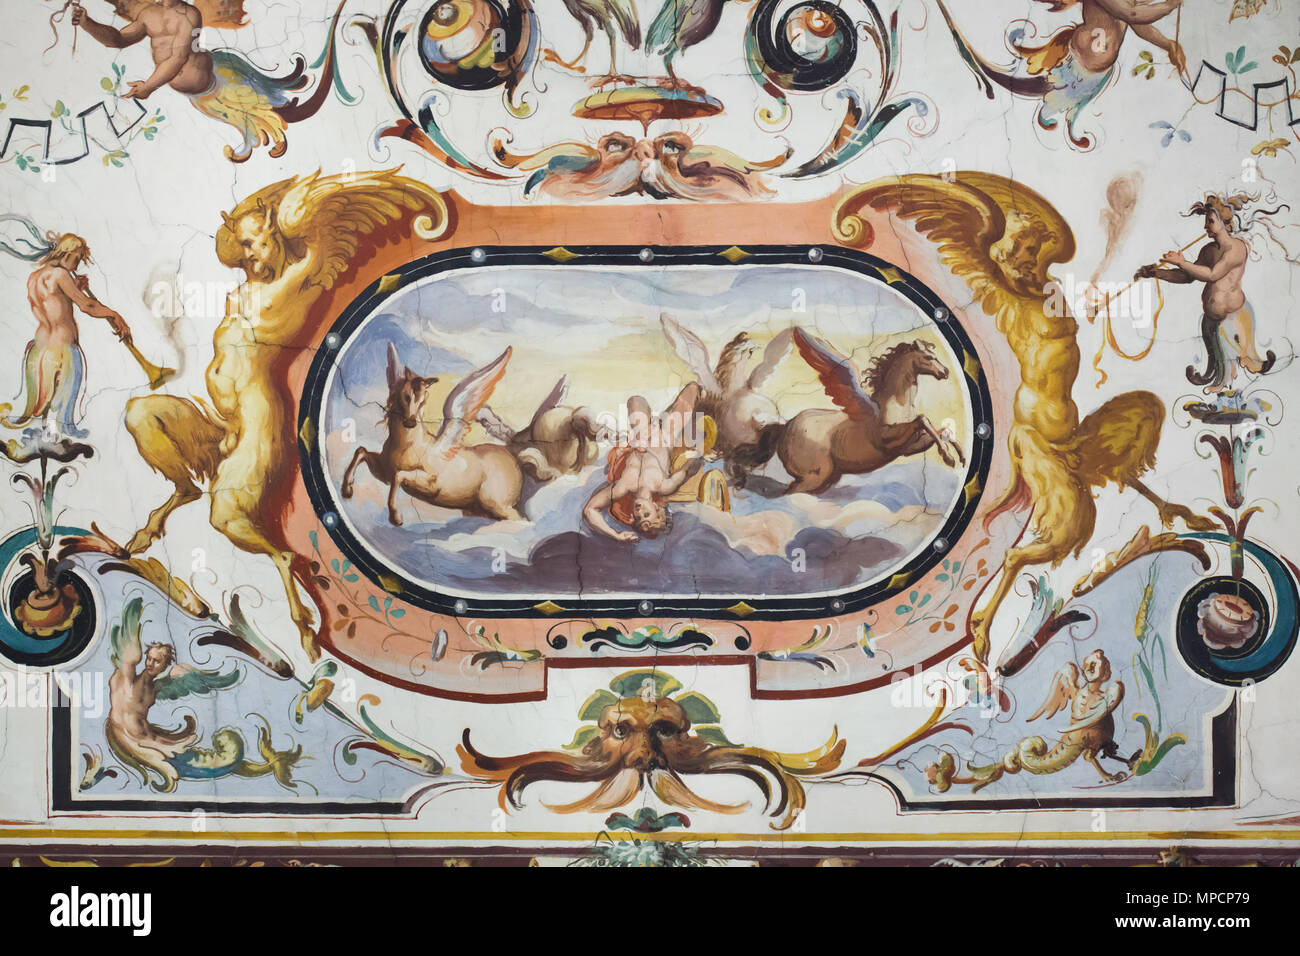 Der Fall des Phaethon. Deckenfresko im Vasari Korridor in den Uffizien (Galleria degli Uffizi) in Florenz, Toskana, Italien. Stockfoto